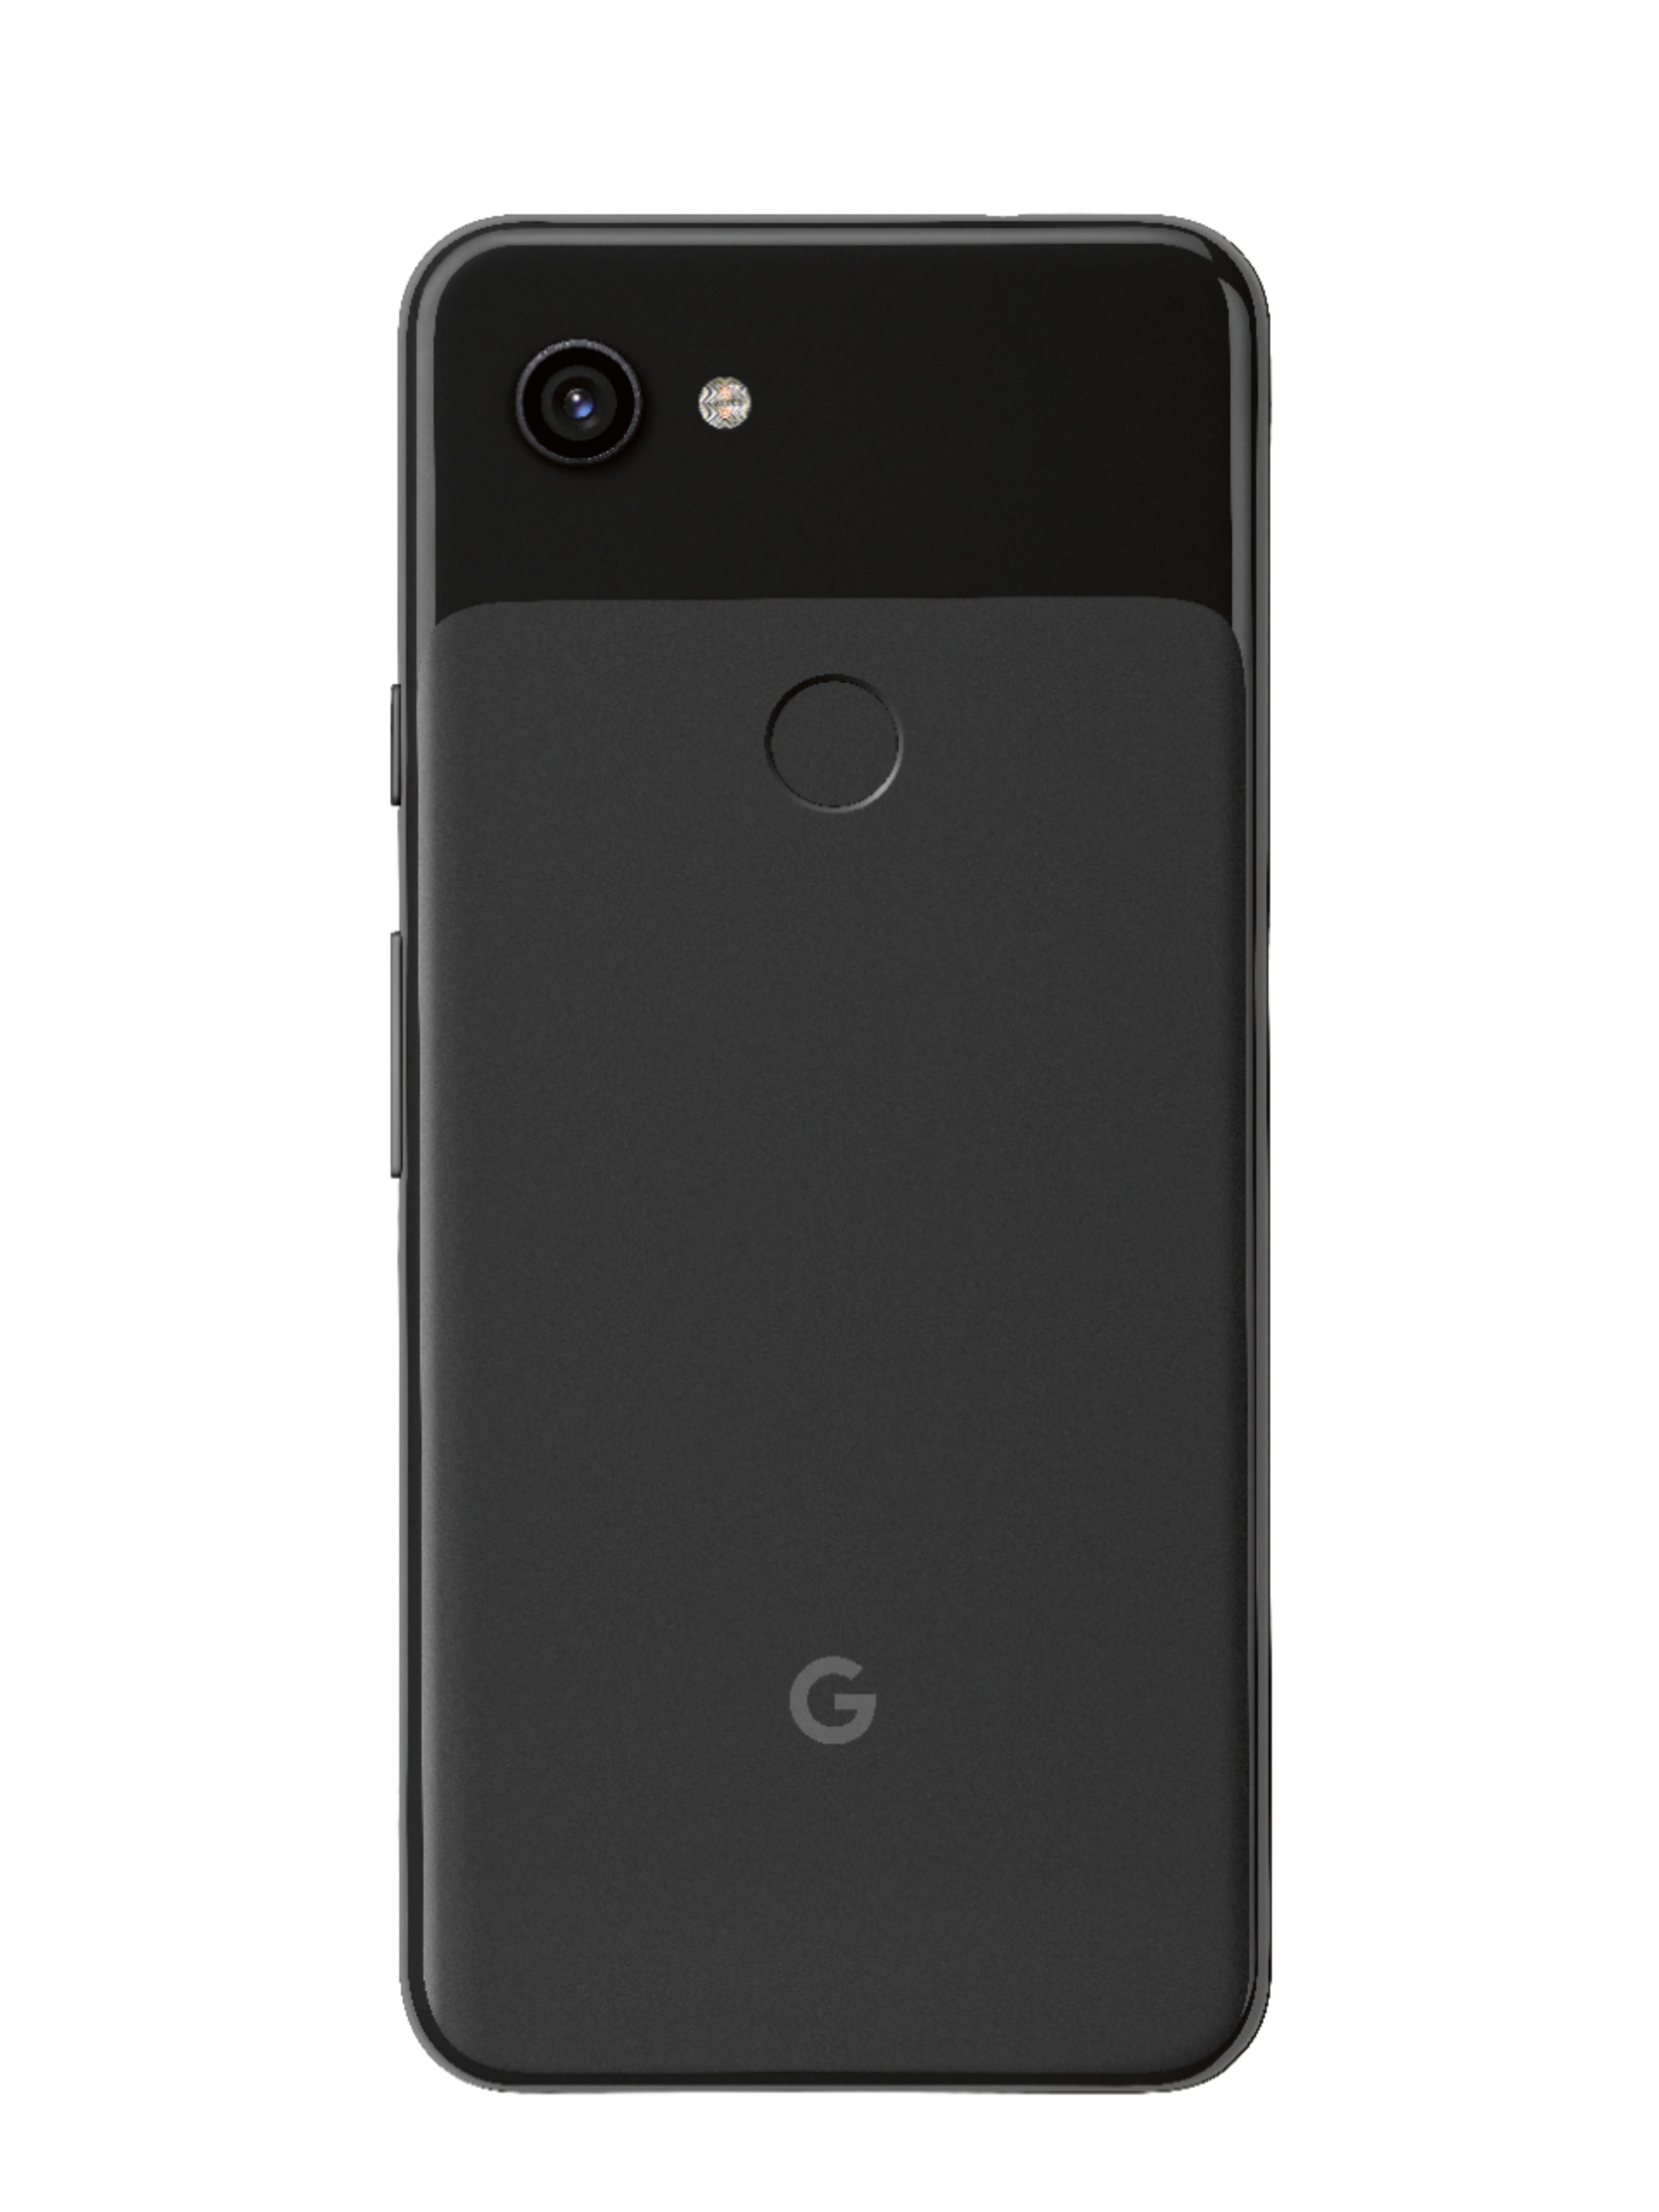 スマートフォン/携帯電話 スマートフォン本体 Best Buy: Google Pixel 3a 64GB (Unlocked) Just Black GA00655-US